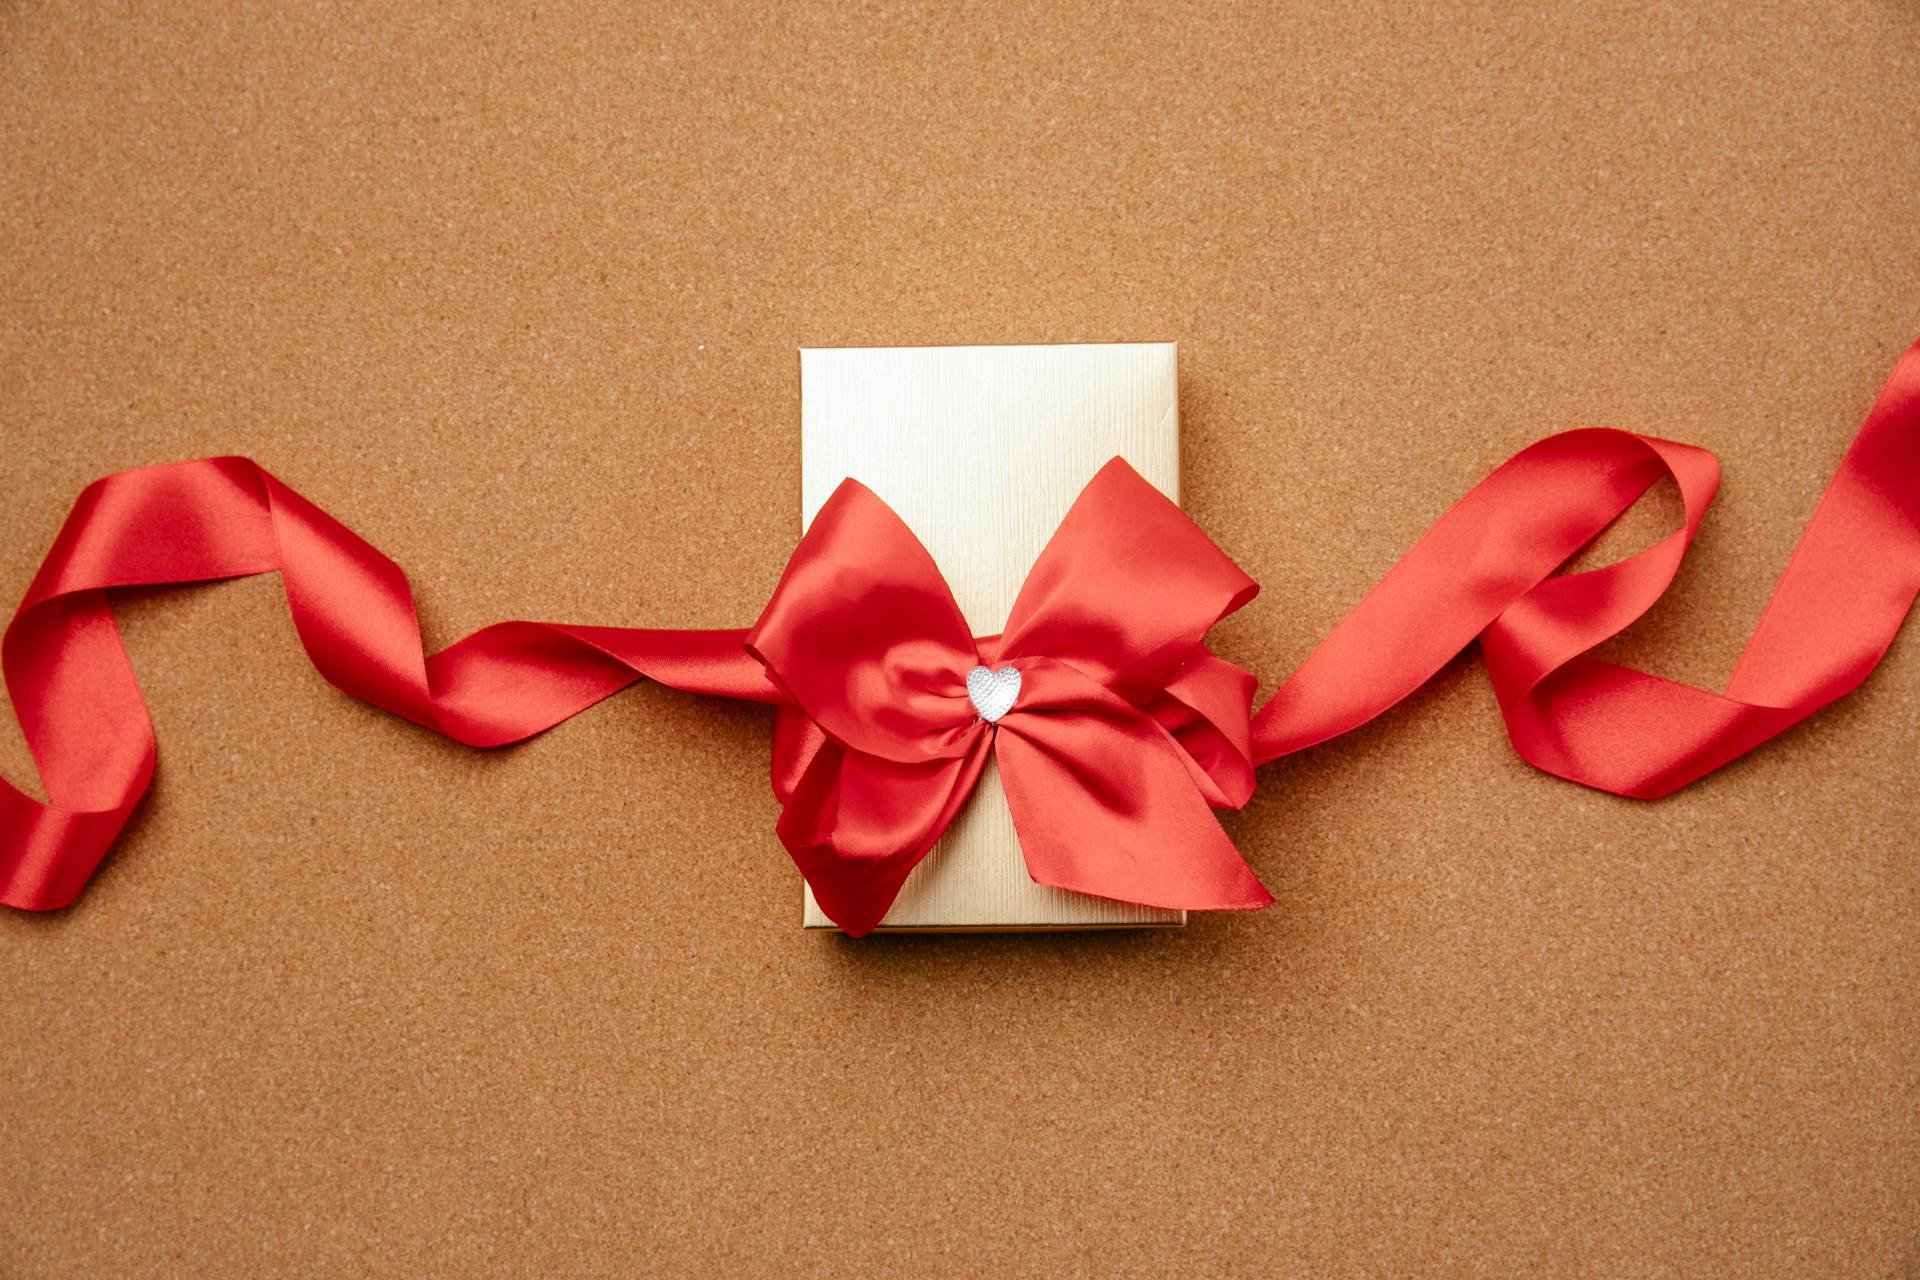 Une petite boîte cadeau décorée d'un ruban rouge | Source : Pexels